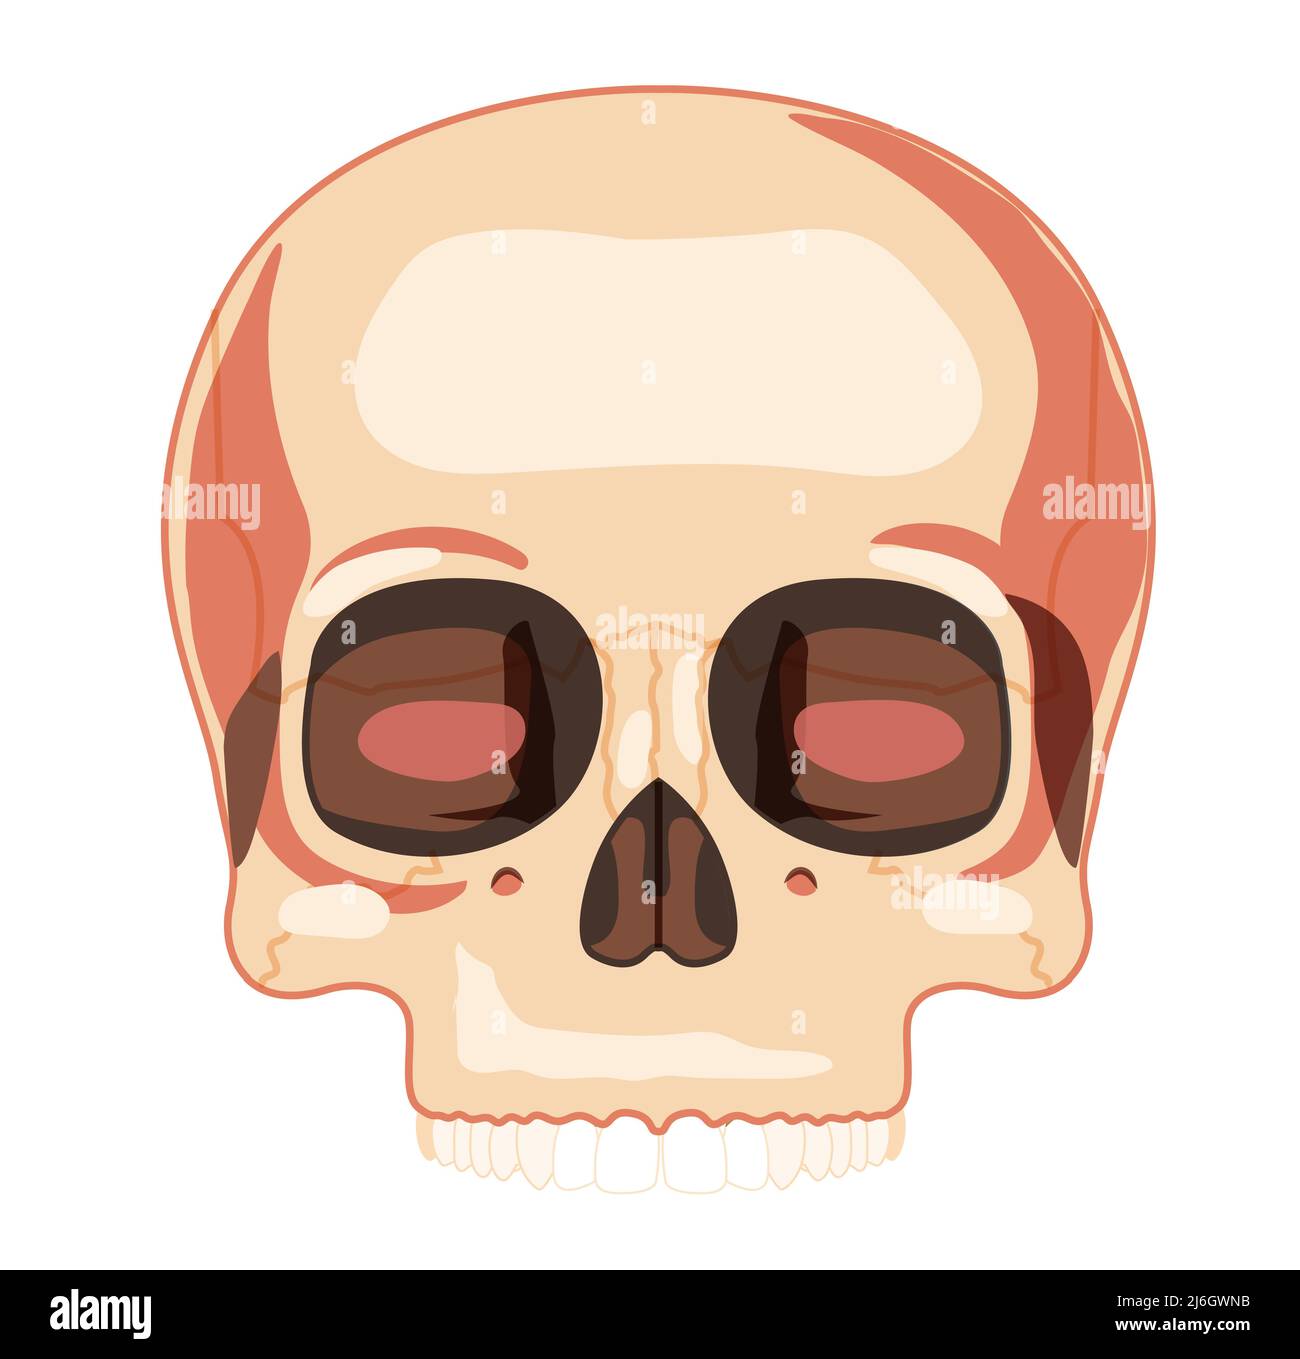 Squelette du crâne vue de face de la tête humaine avec rangée de dents. Modèle de pièce supérieure à face humaine. Ensemble de couleurs naturelles plates et réalistes. Illustration vectorielle d'une anatomie de 3D isolée sur fond blanc Illustration de Vecteur